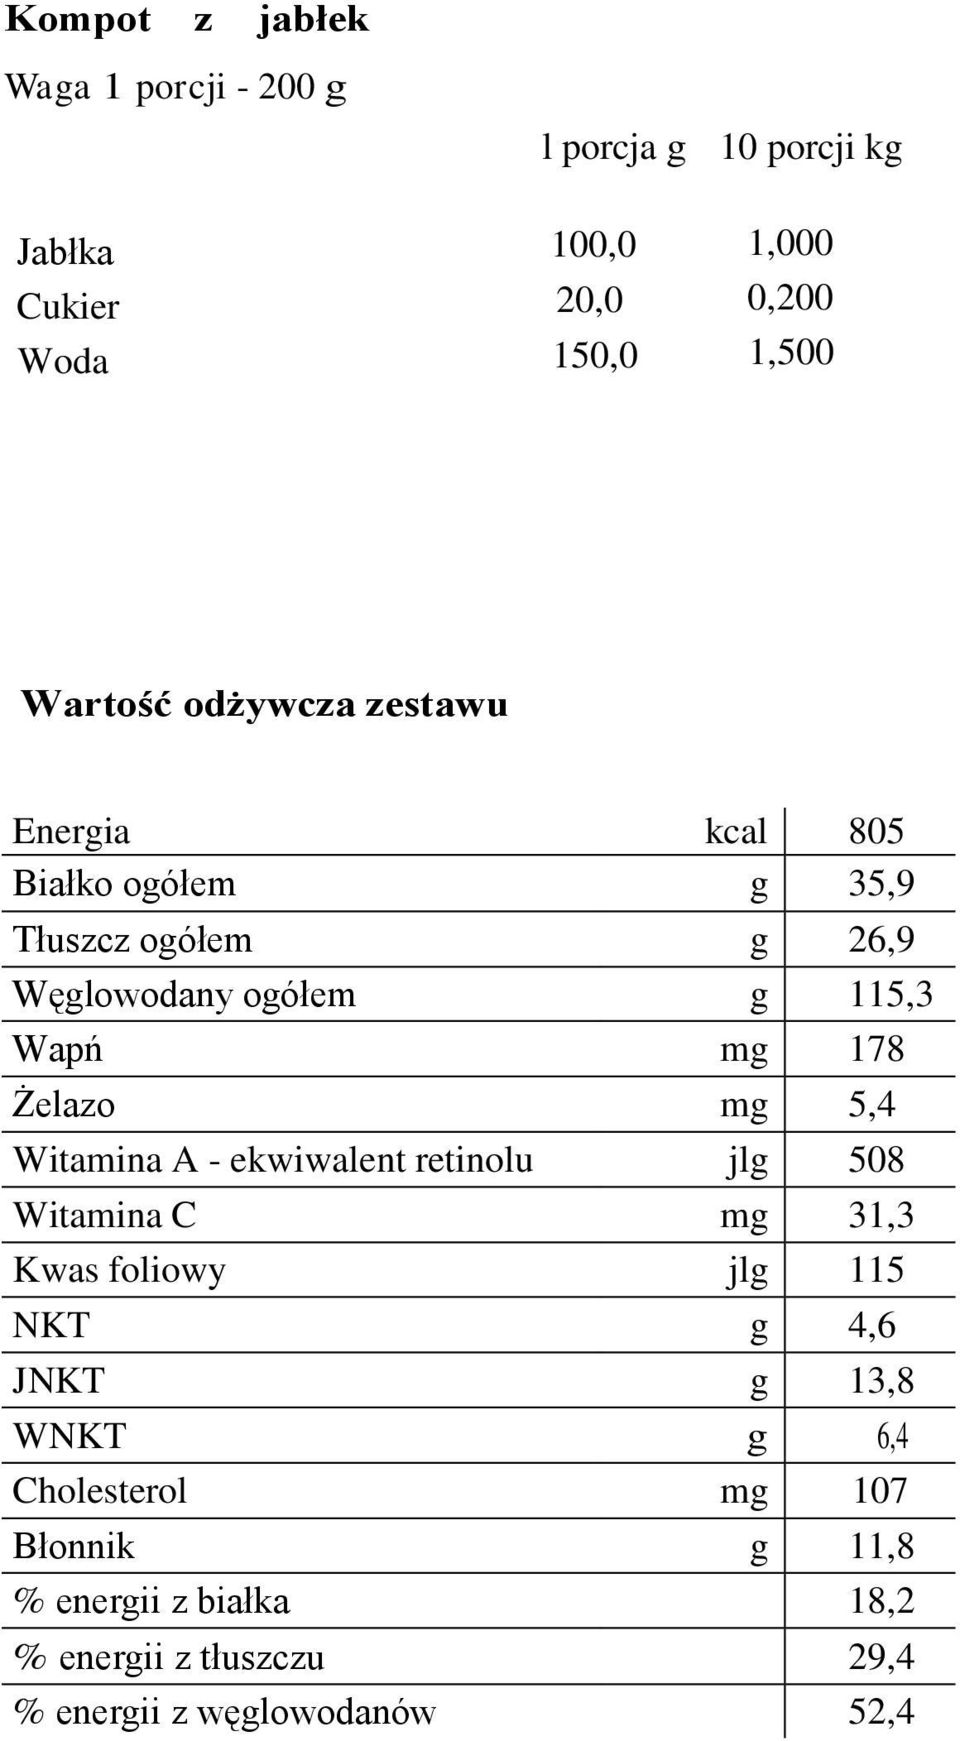 178 Żelazo mg 5,4 Witamina A - ekwiwalent retinolu jlg 508 Witamina C mg 31,3 Kwas foliowy jlg 115 NKT g 4,6 JNKT g 13,8